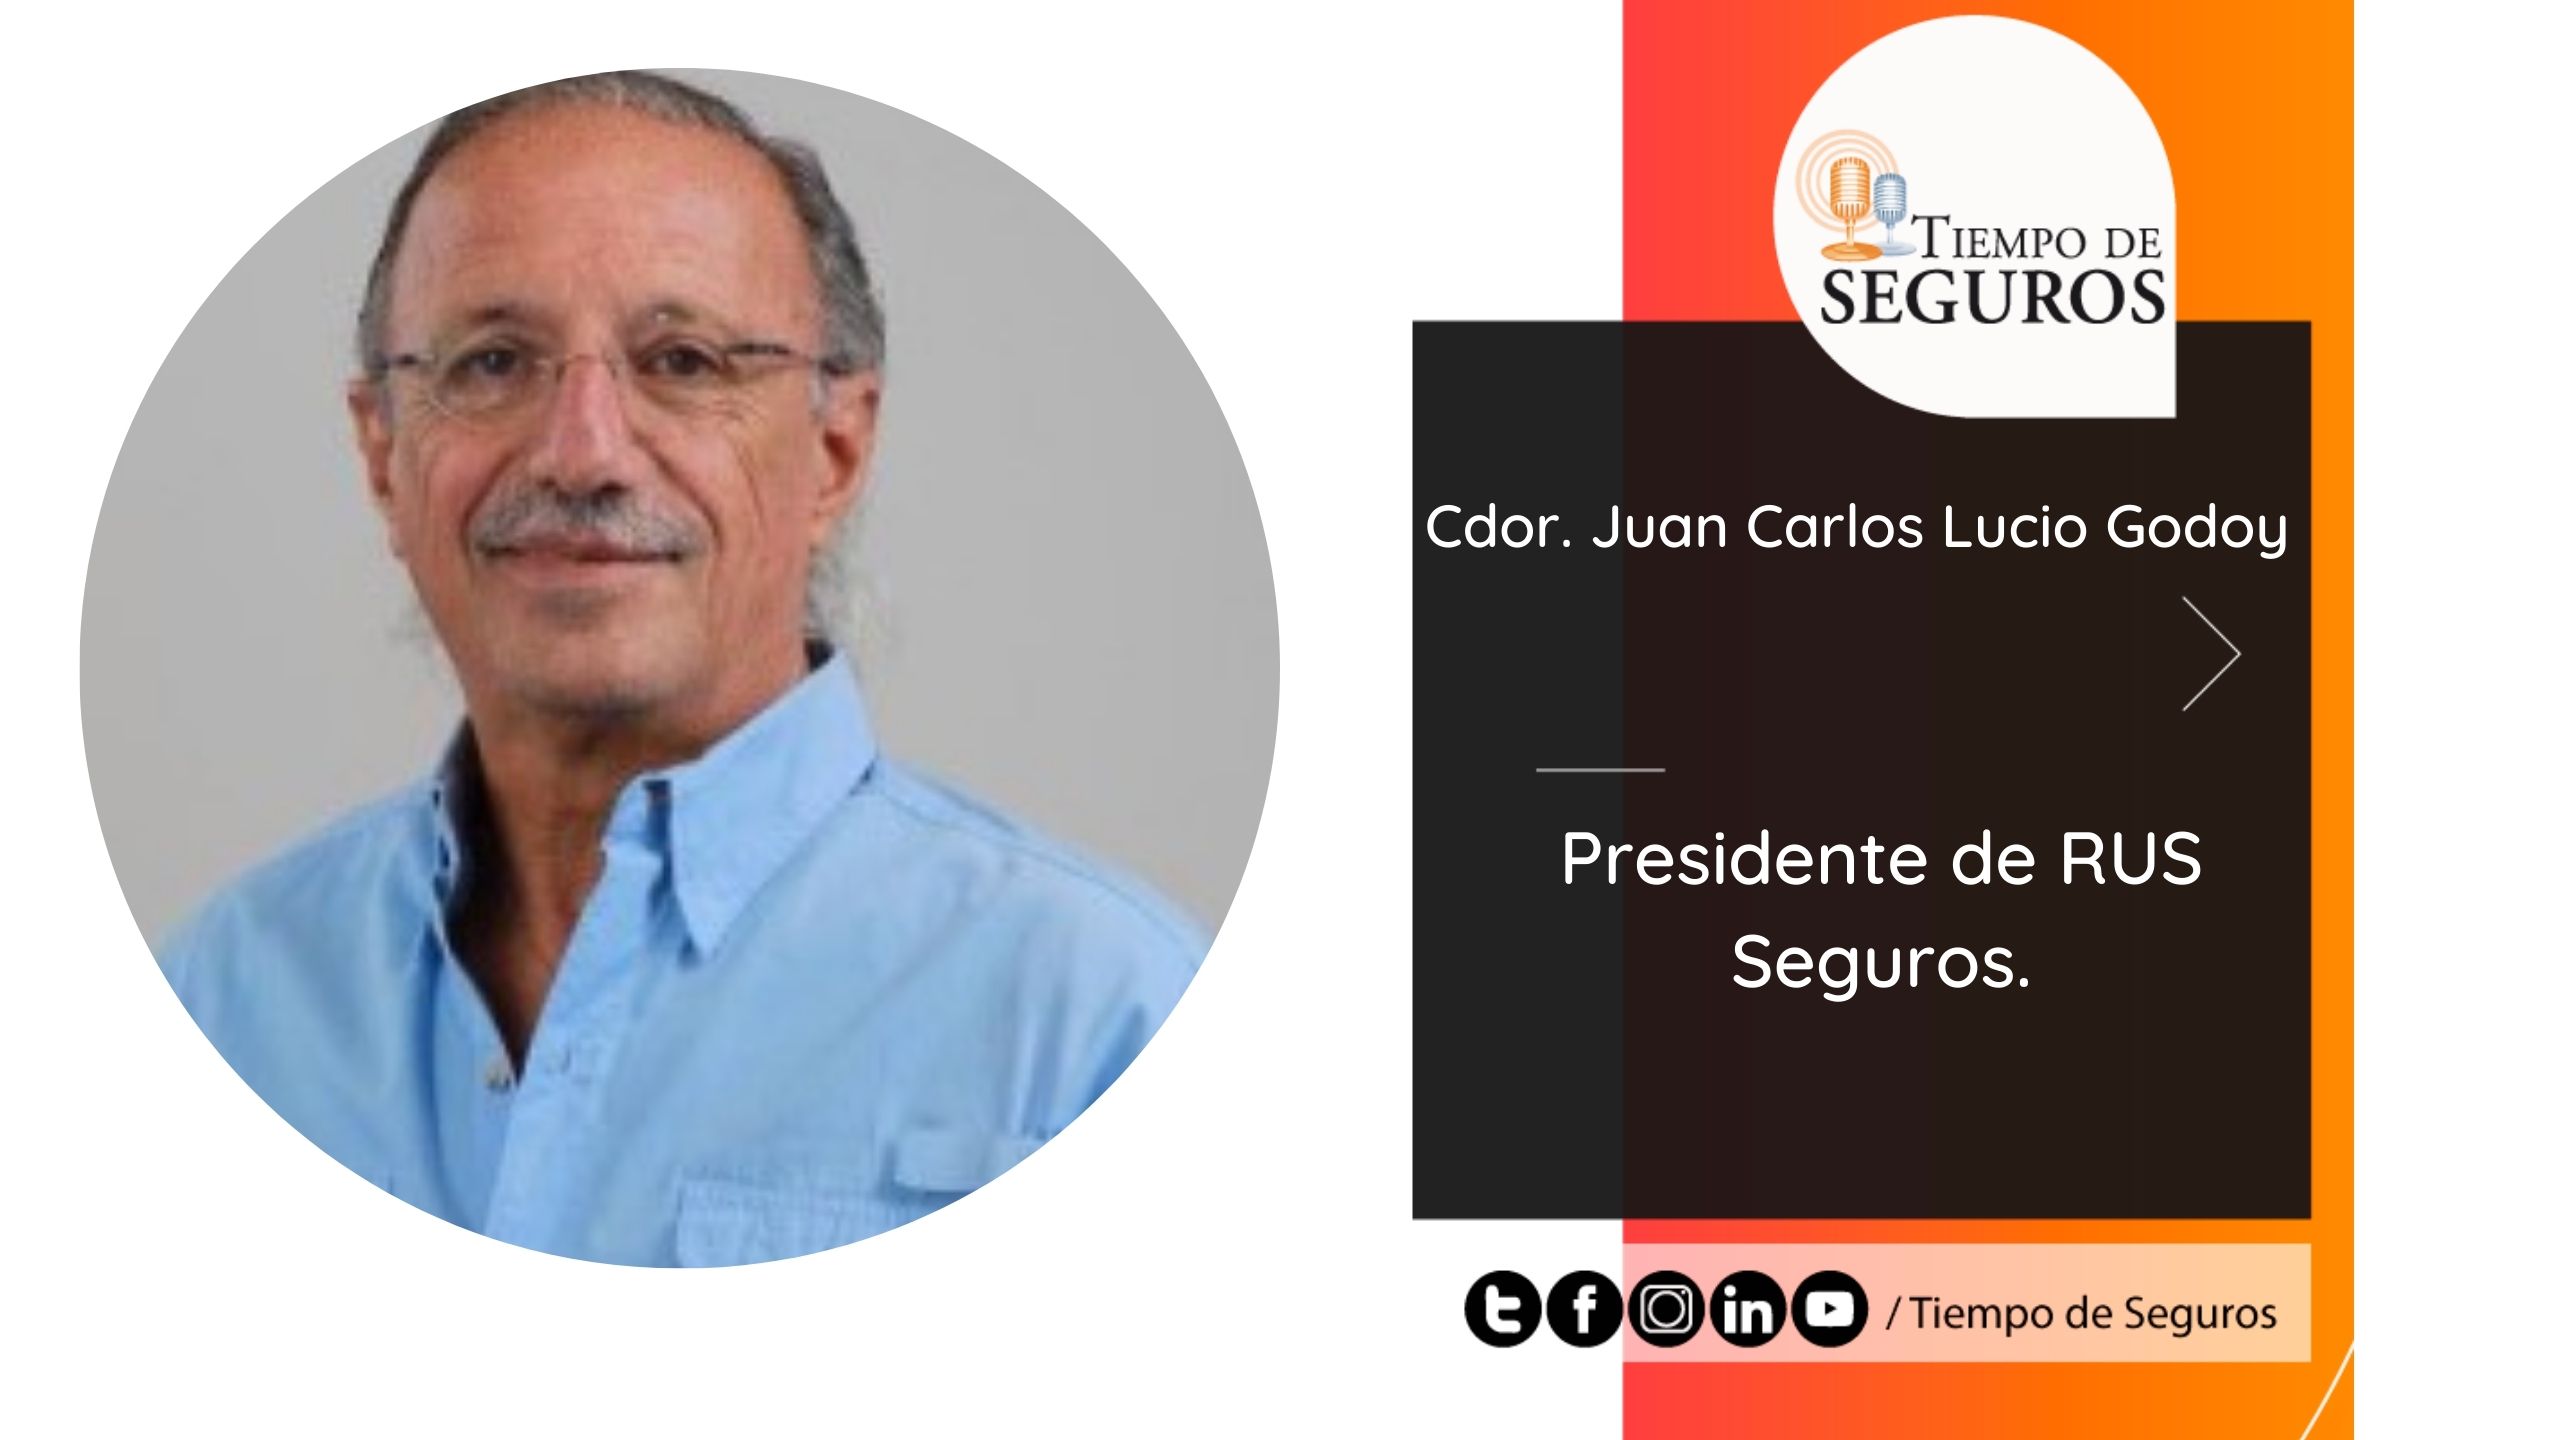 Entrevista al Cdor. Juan Carlos Lucio Godoy, Presidente de RUS Seguros